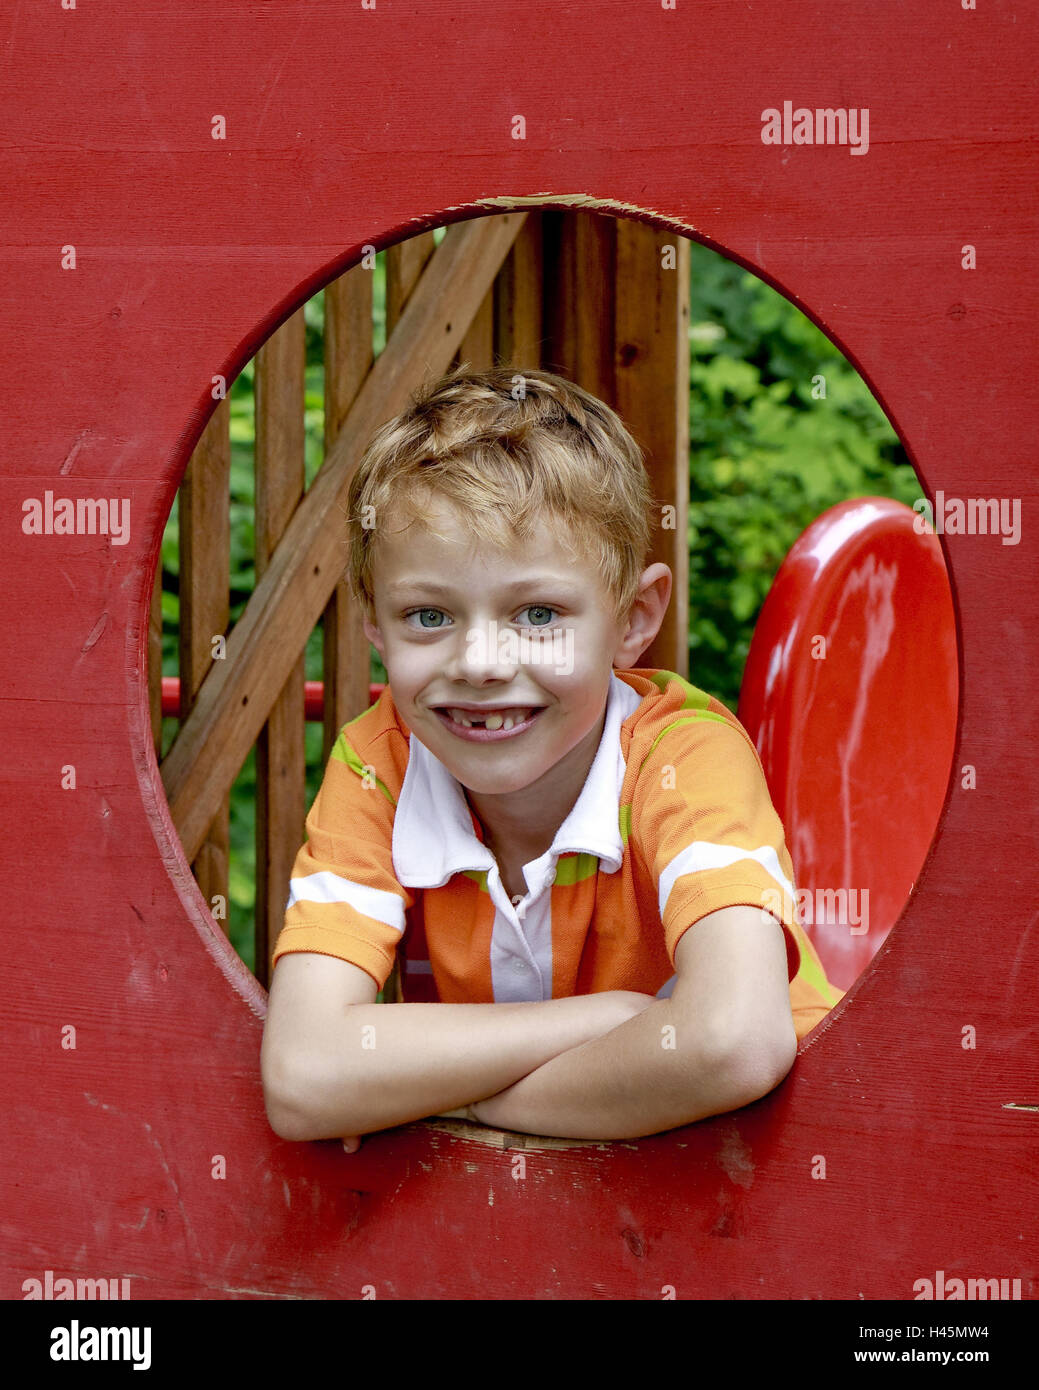 Ein Junge, 7 Jahre alt, auf einem Spielplatz, sieht durch eine Öffnung, Portrait, Modell veröffentlicht, Stockfoto